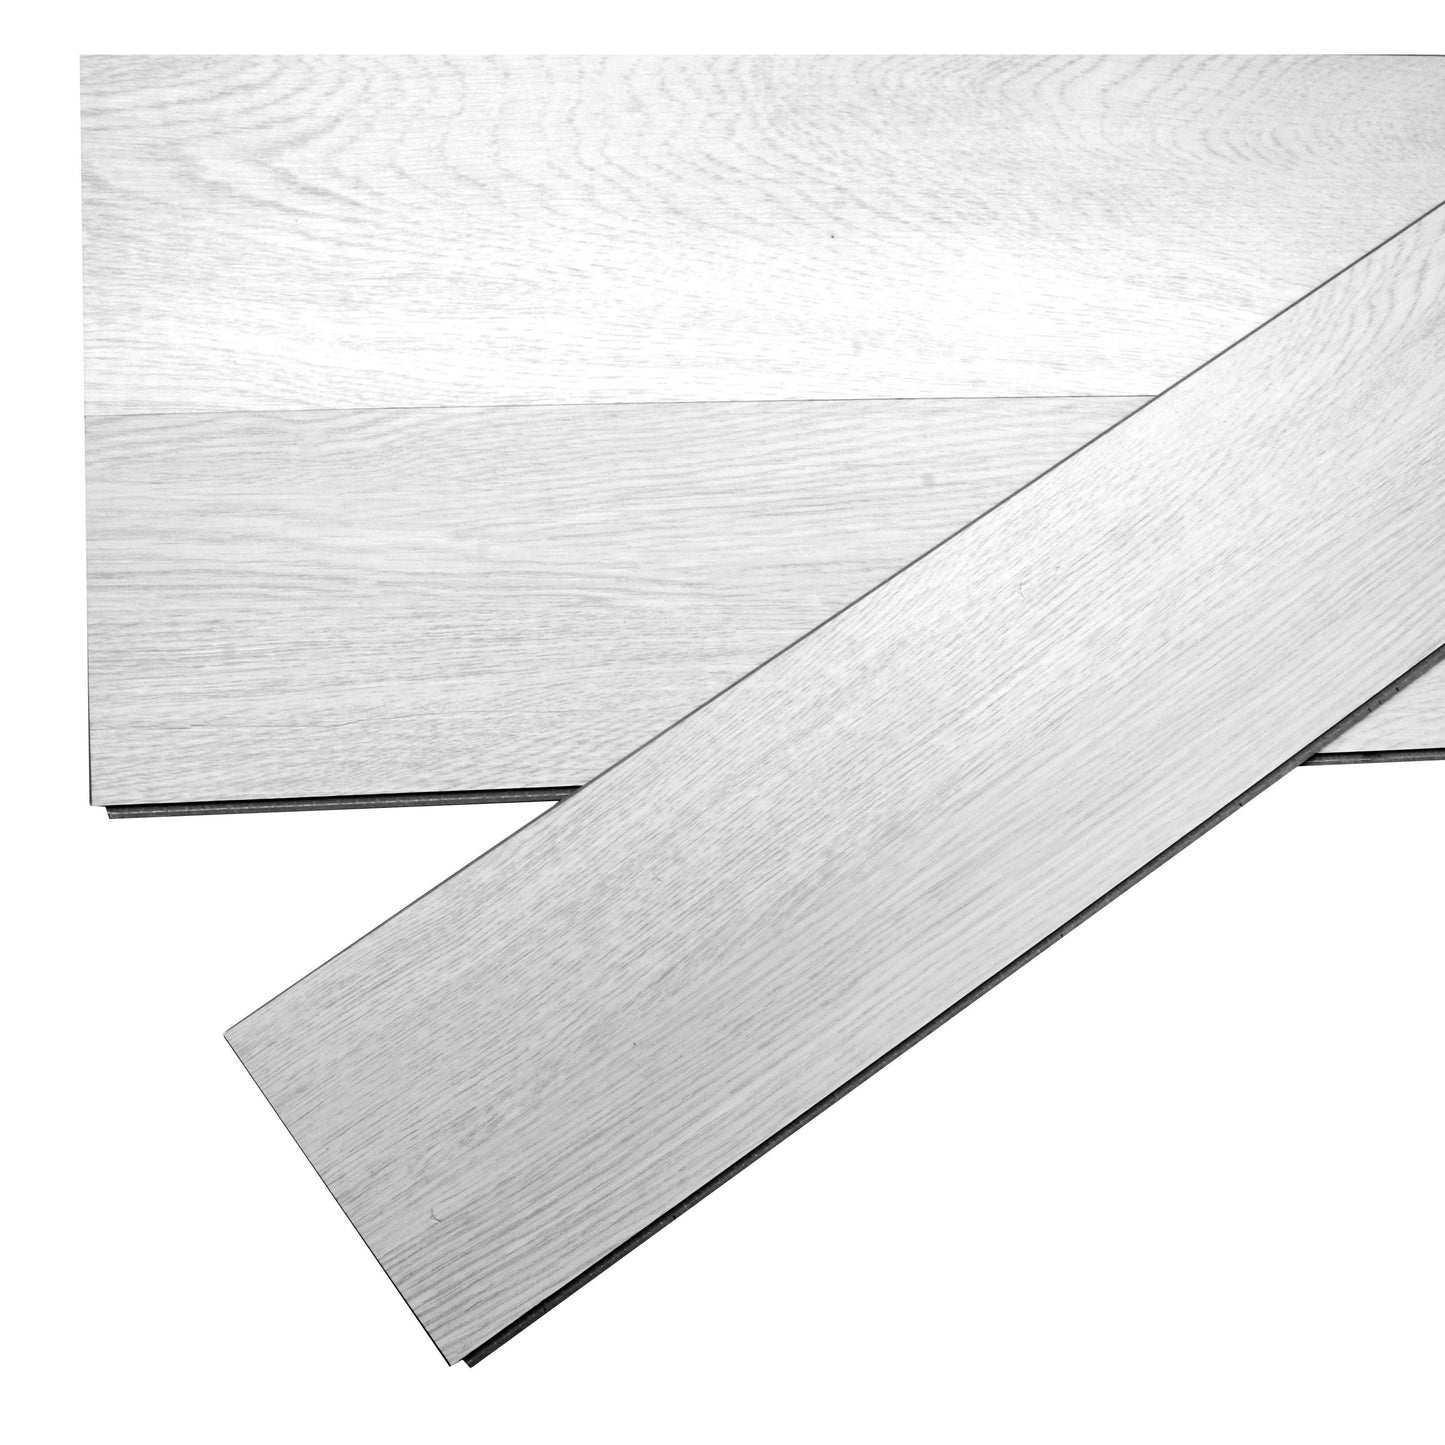 19 Stück  2,5m² Klick  Vinylboden PVC Bodenbelag 3,5mm Vinyl Laminat Dielen 0,3 mm Nutzschicht Dielenboden Rutschfest Wasserfest Fußboden